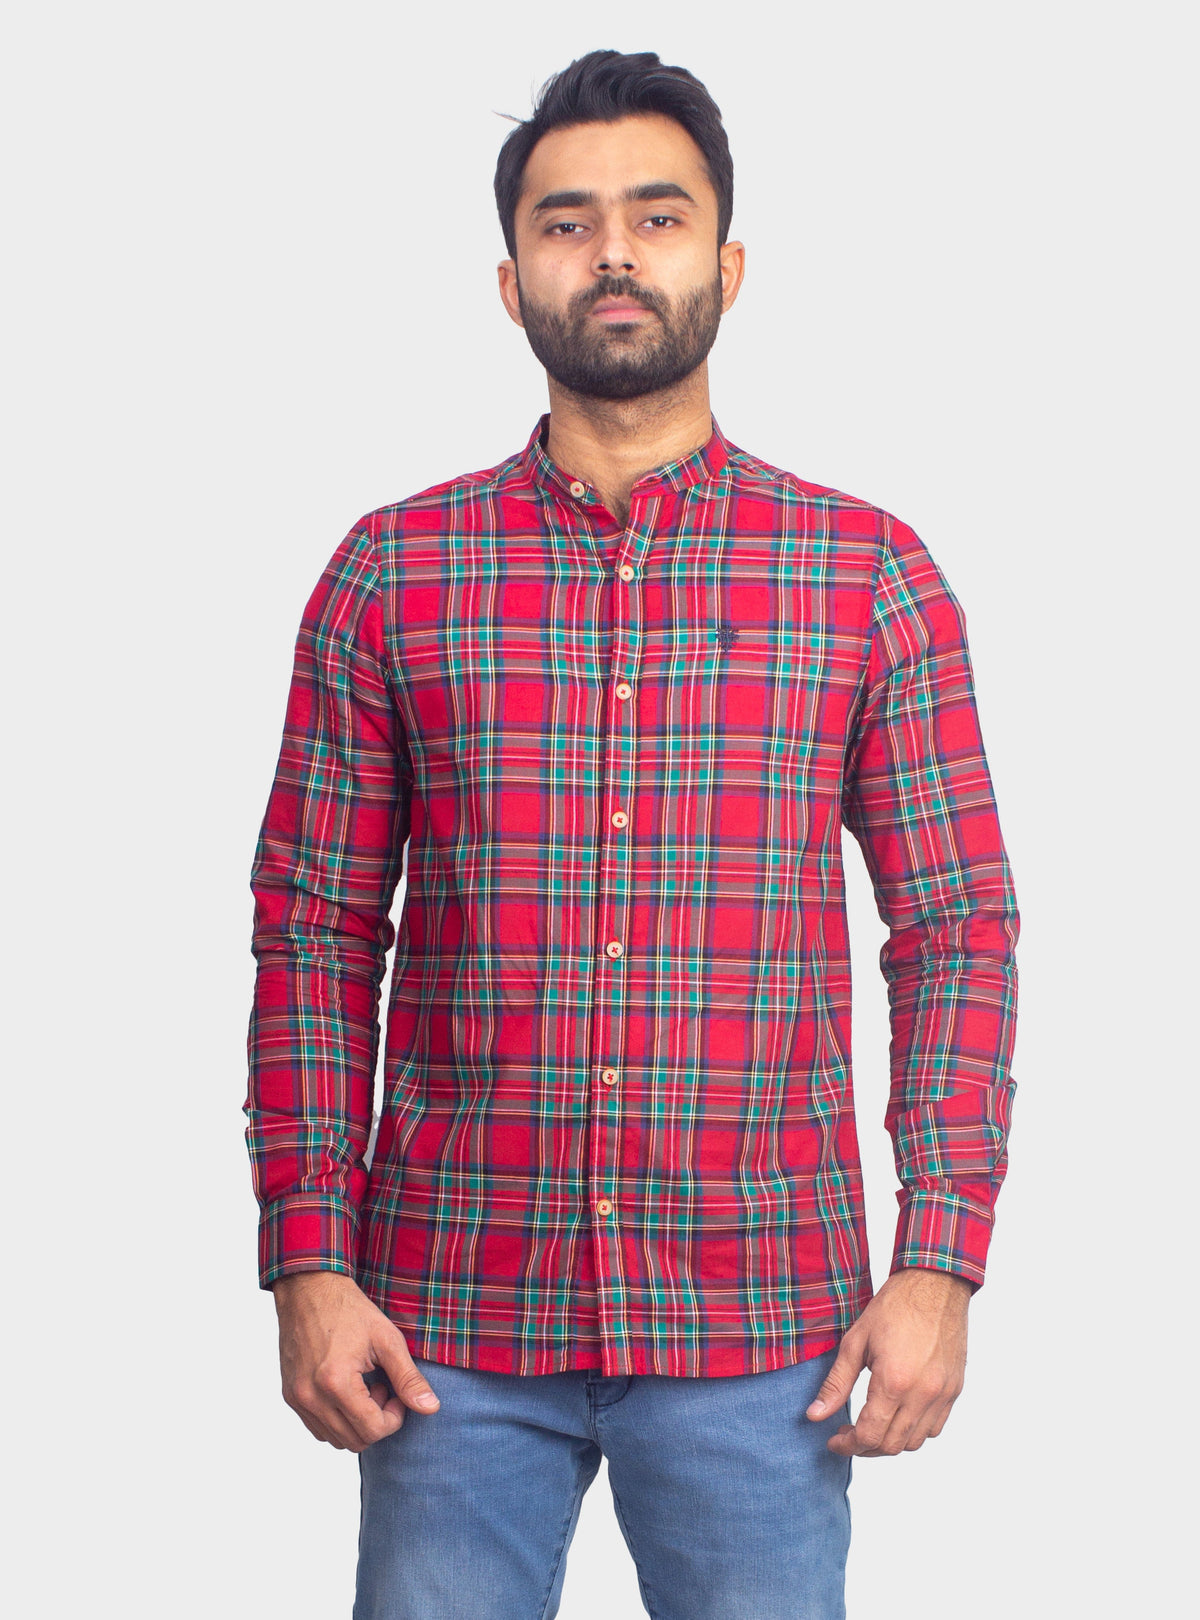 Checkered Casual Shirt - Shc-1443 G/Red Chk